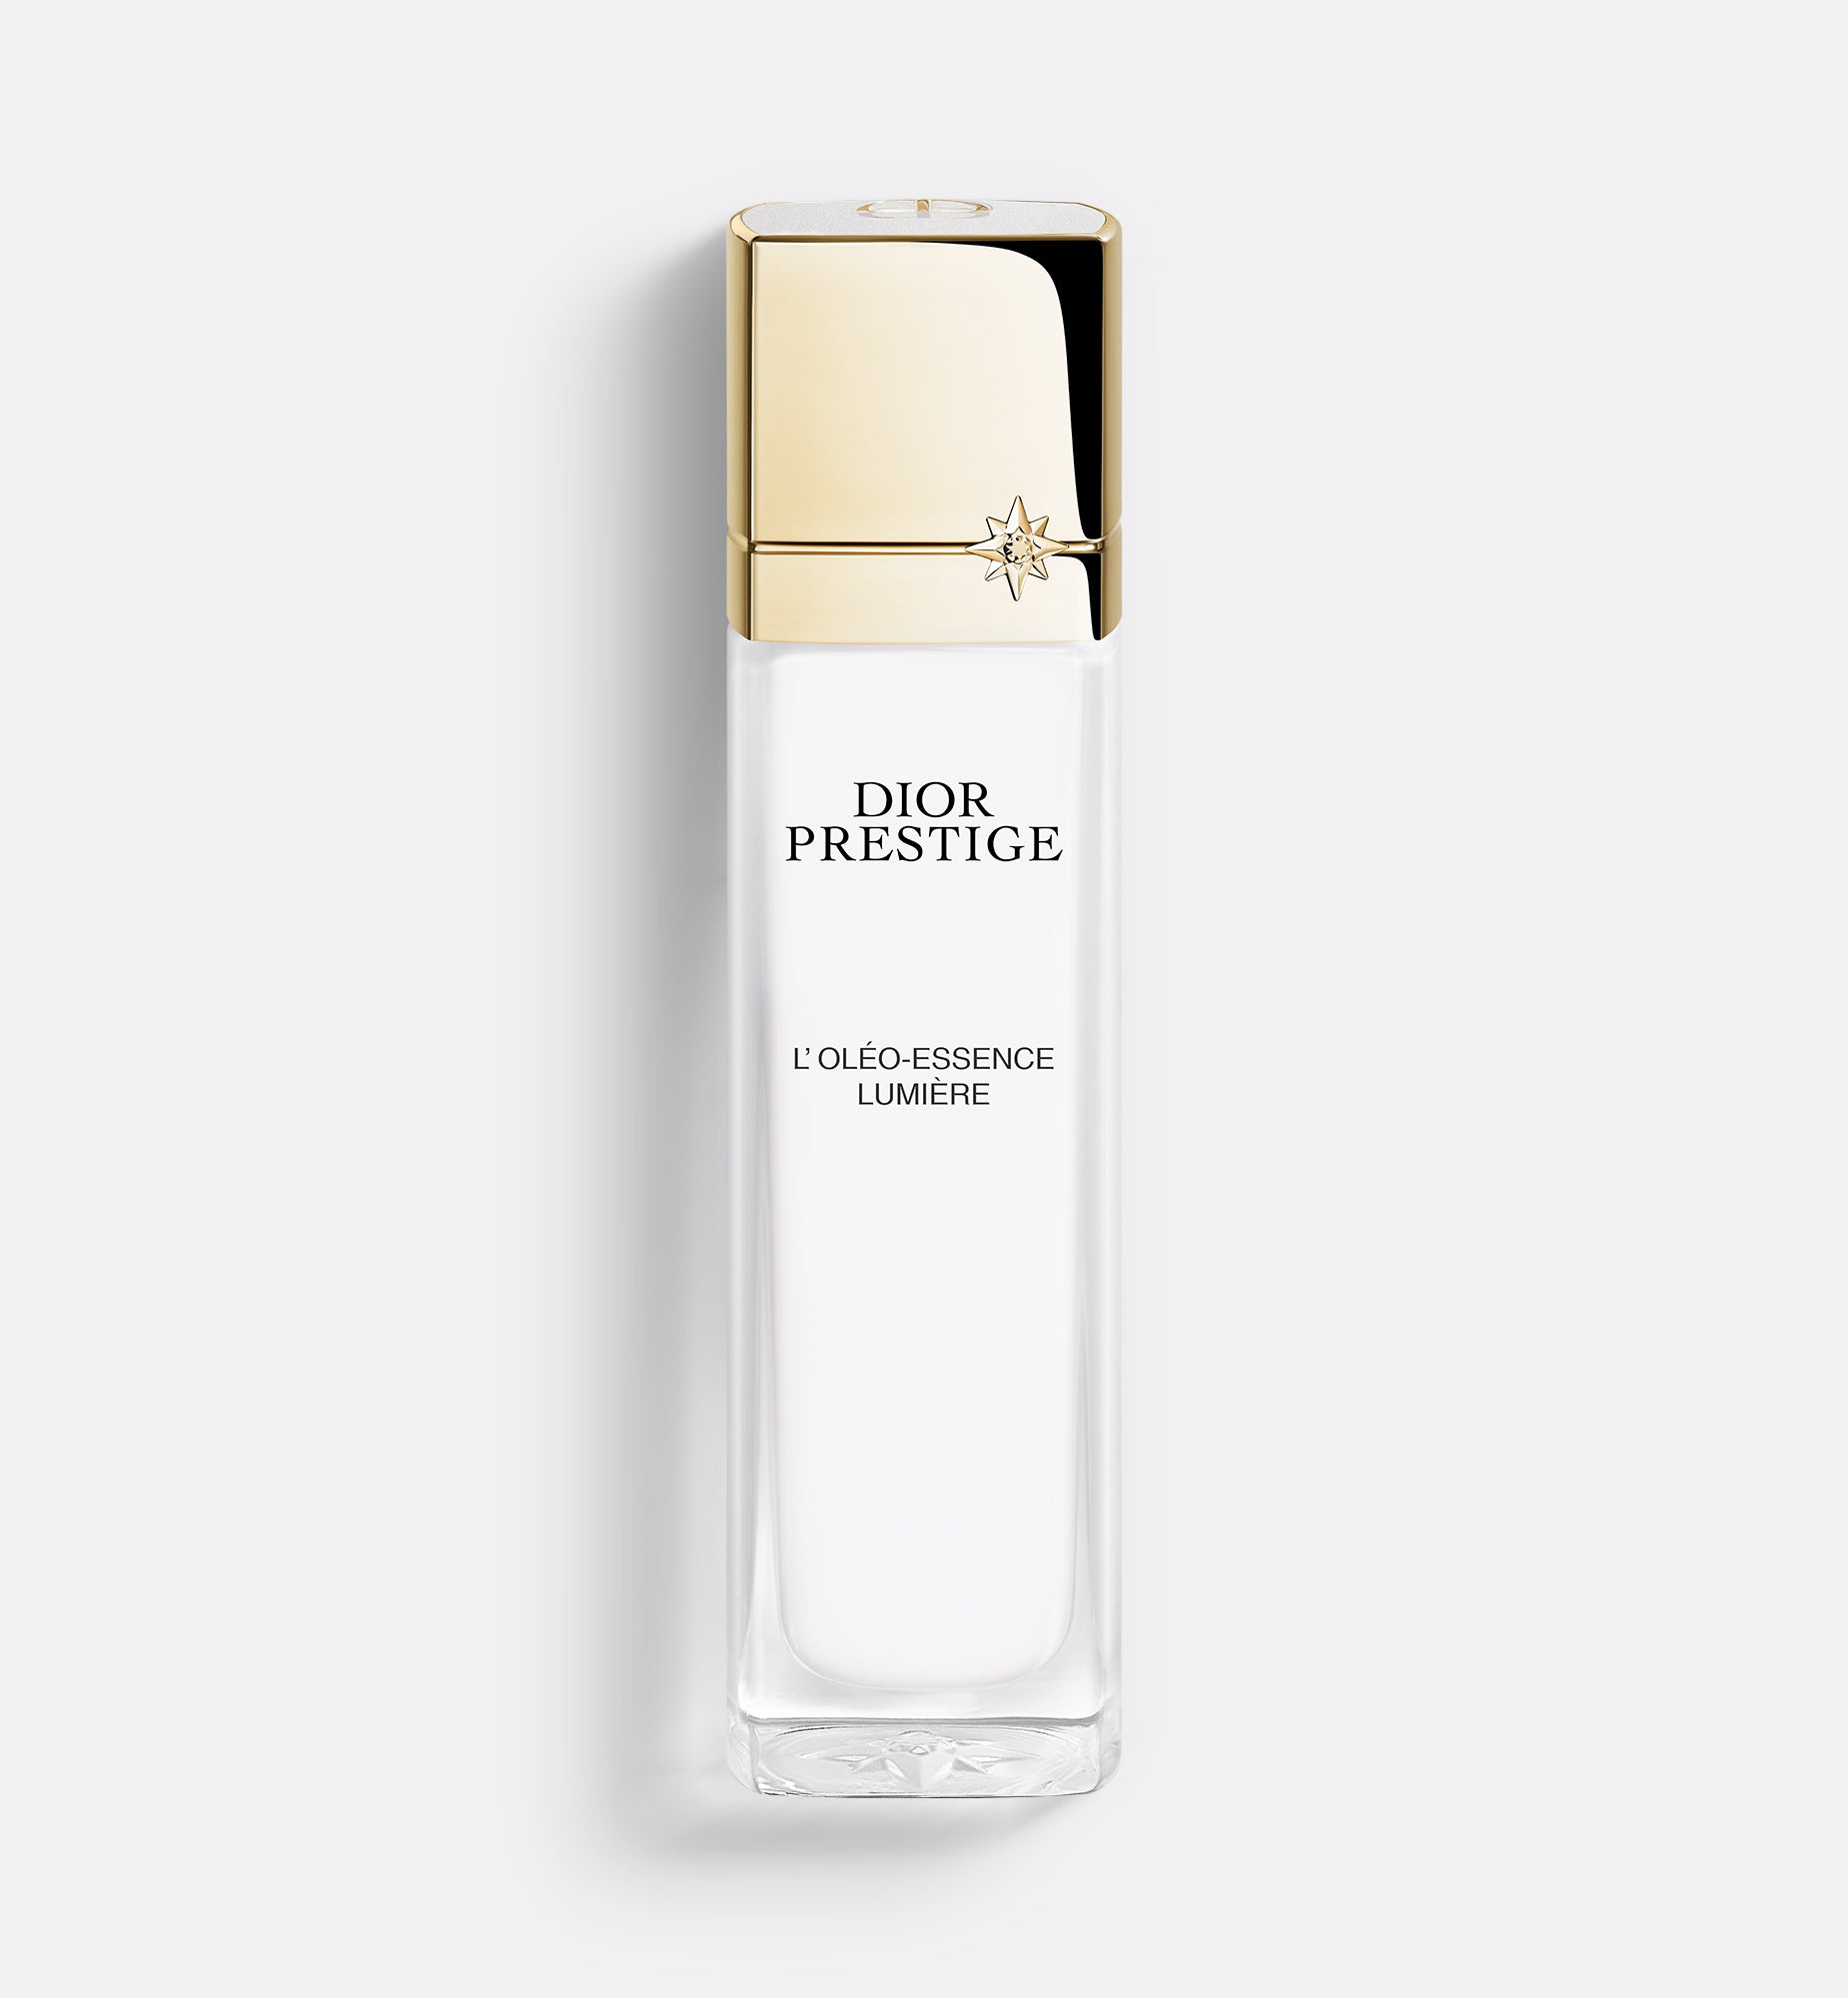 玫瑰花蜜純白深層亮肌化妝水: 去角質爽膚水| Dior Beauty HK